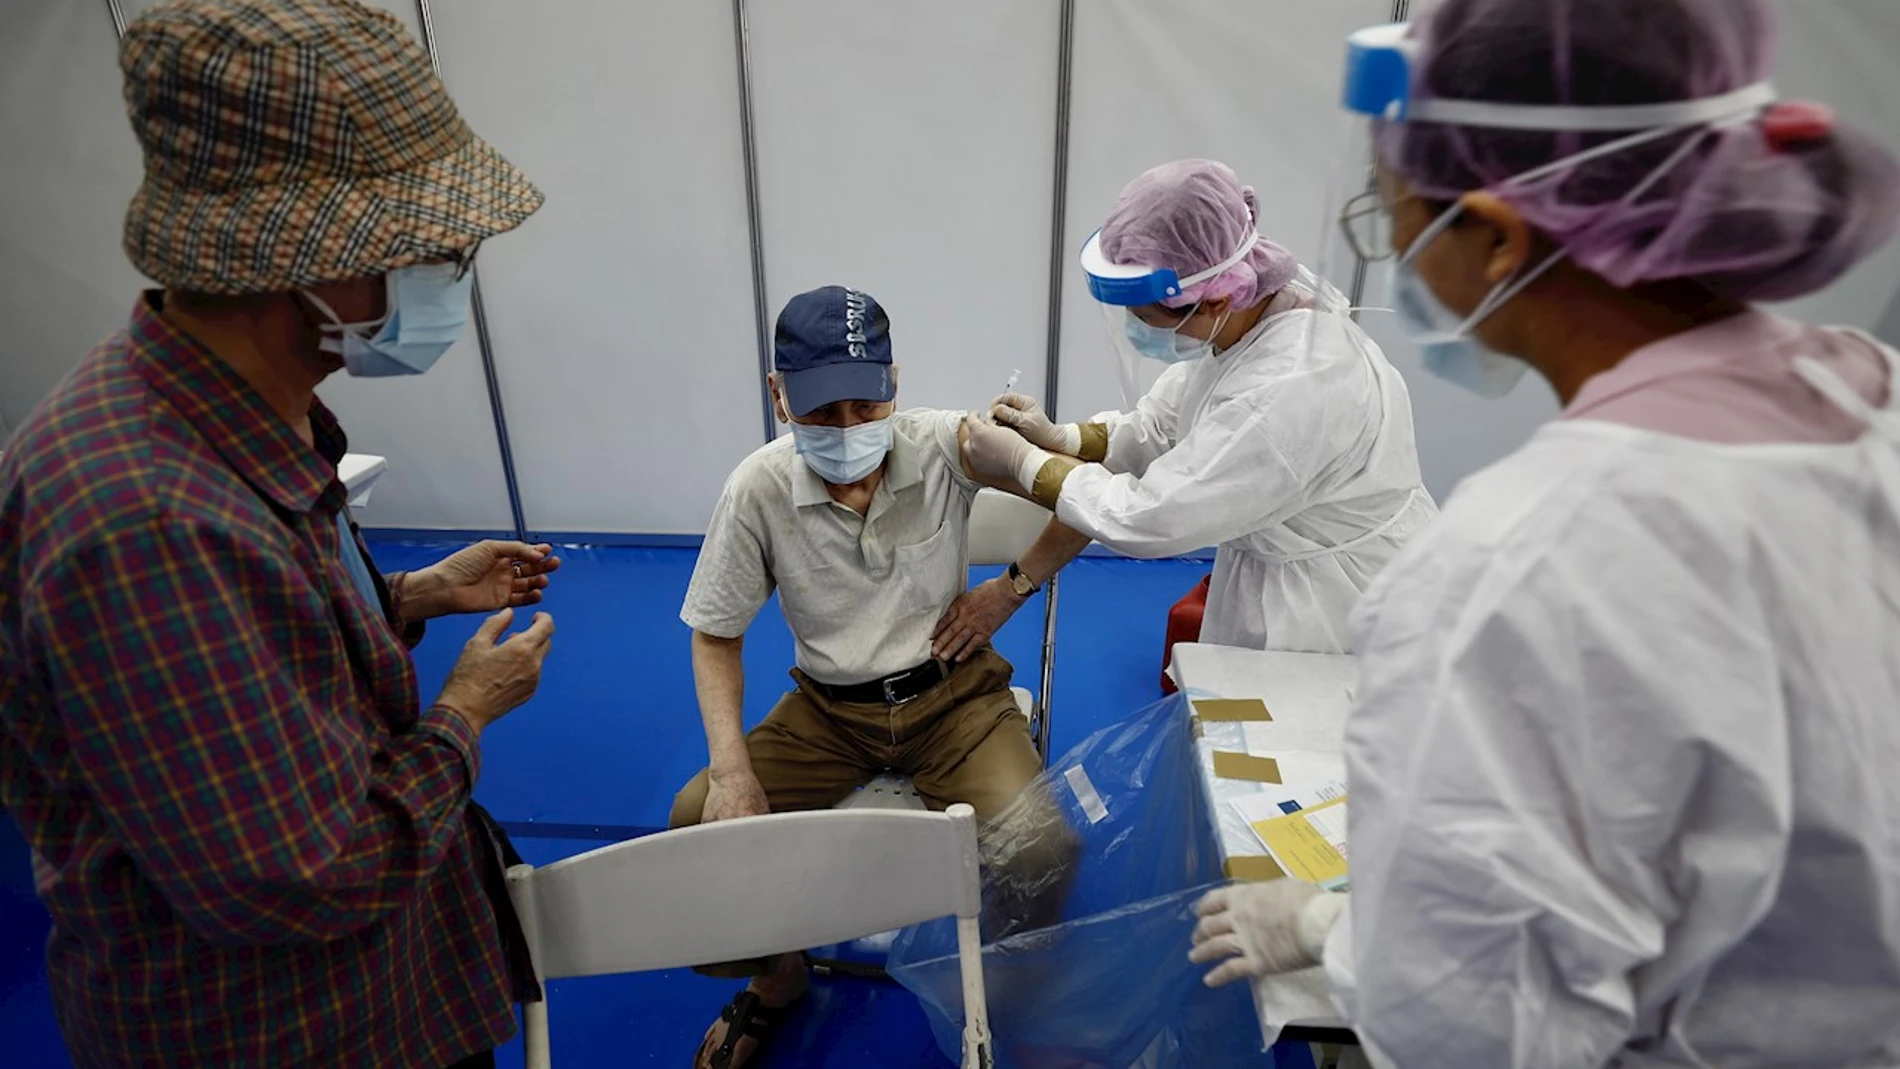 Centro de vacunación contra el coronavirus en China